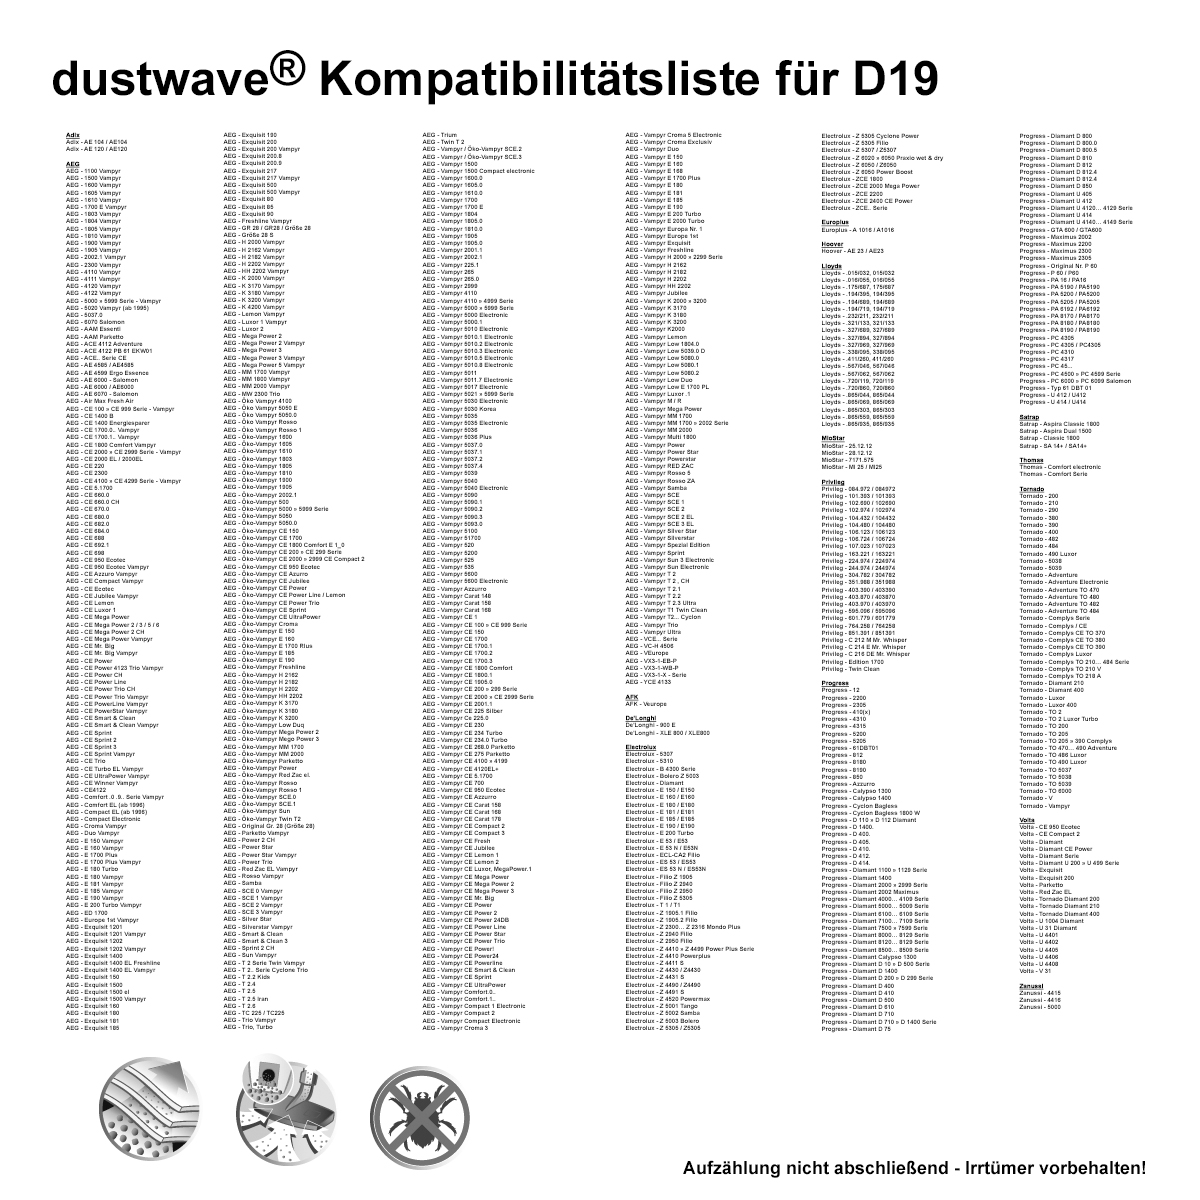 Dustwave® 10 Staubsaugerbeutel für AquaPur AE 700 - hocheffizient, mehrlagiges Mikrovlies mit Hygieneverschluss - Made in Germany